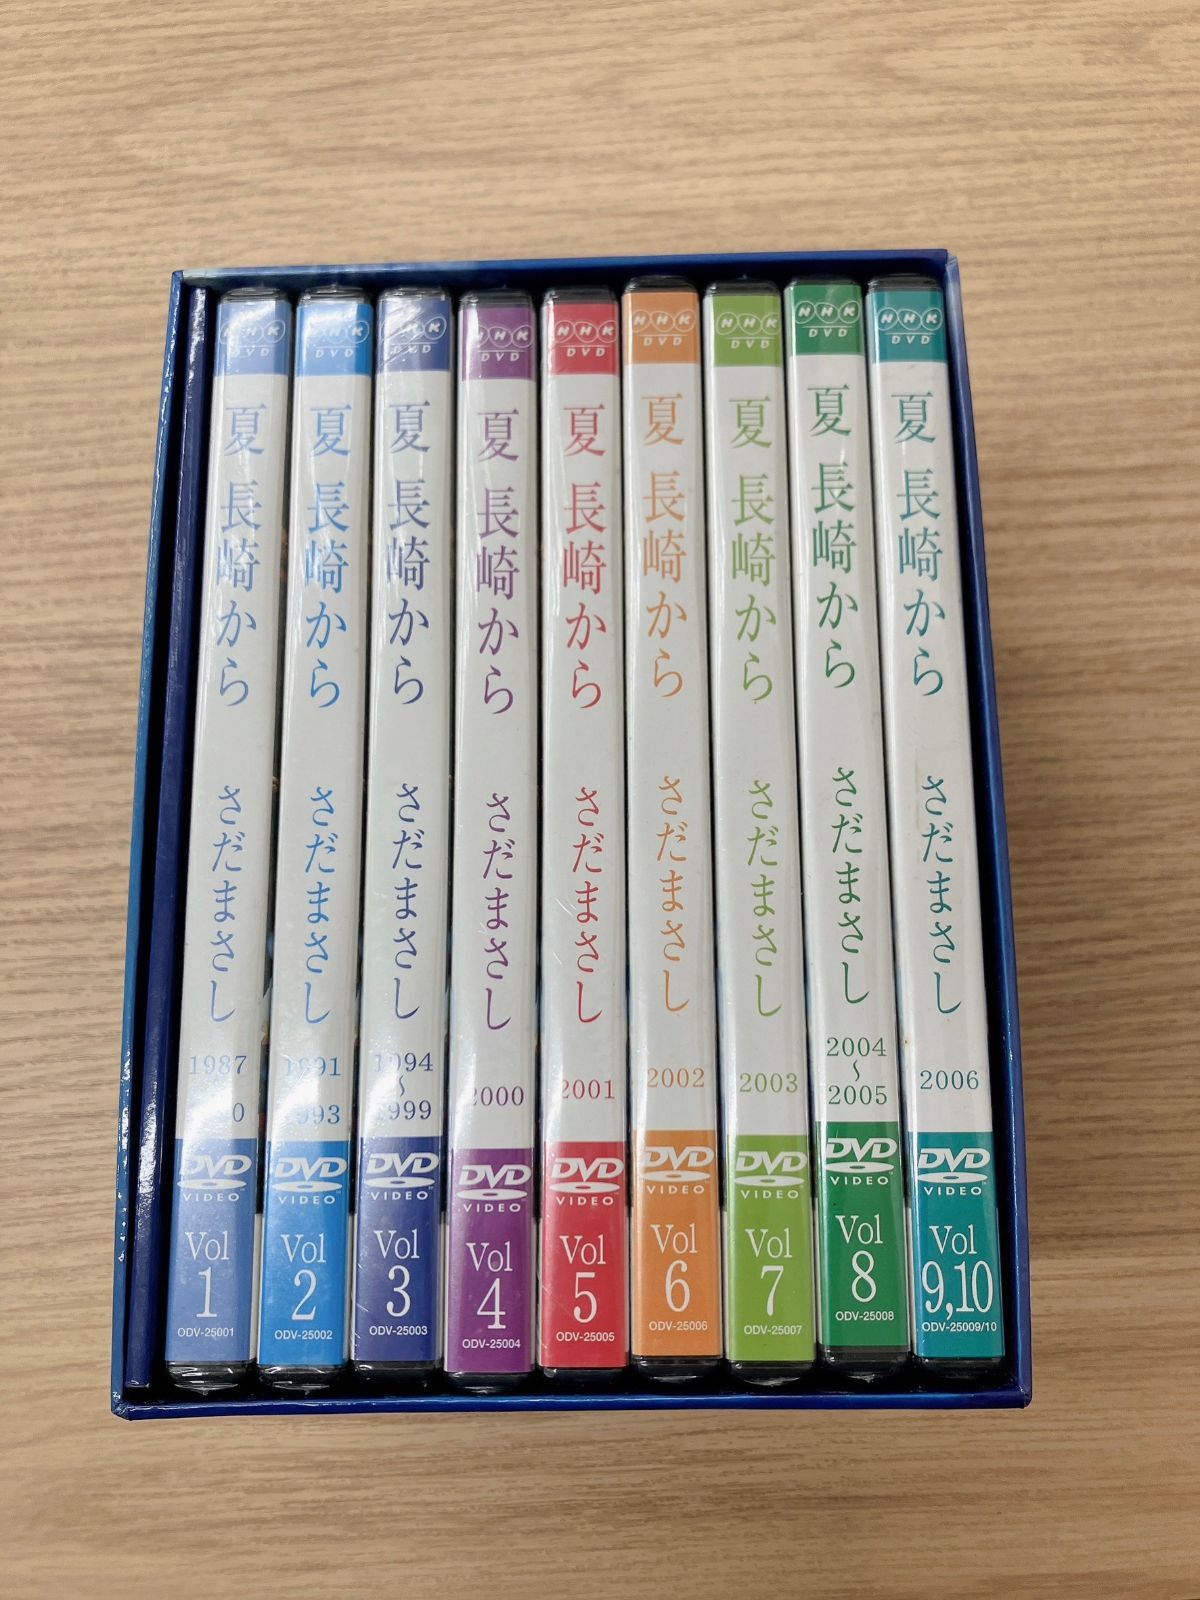 最新入荷 さだまさし 夏 BOX 全9巻DVD 長崎から ミュージック 